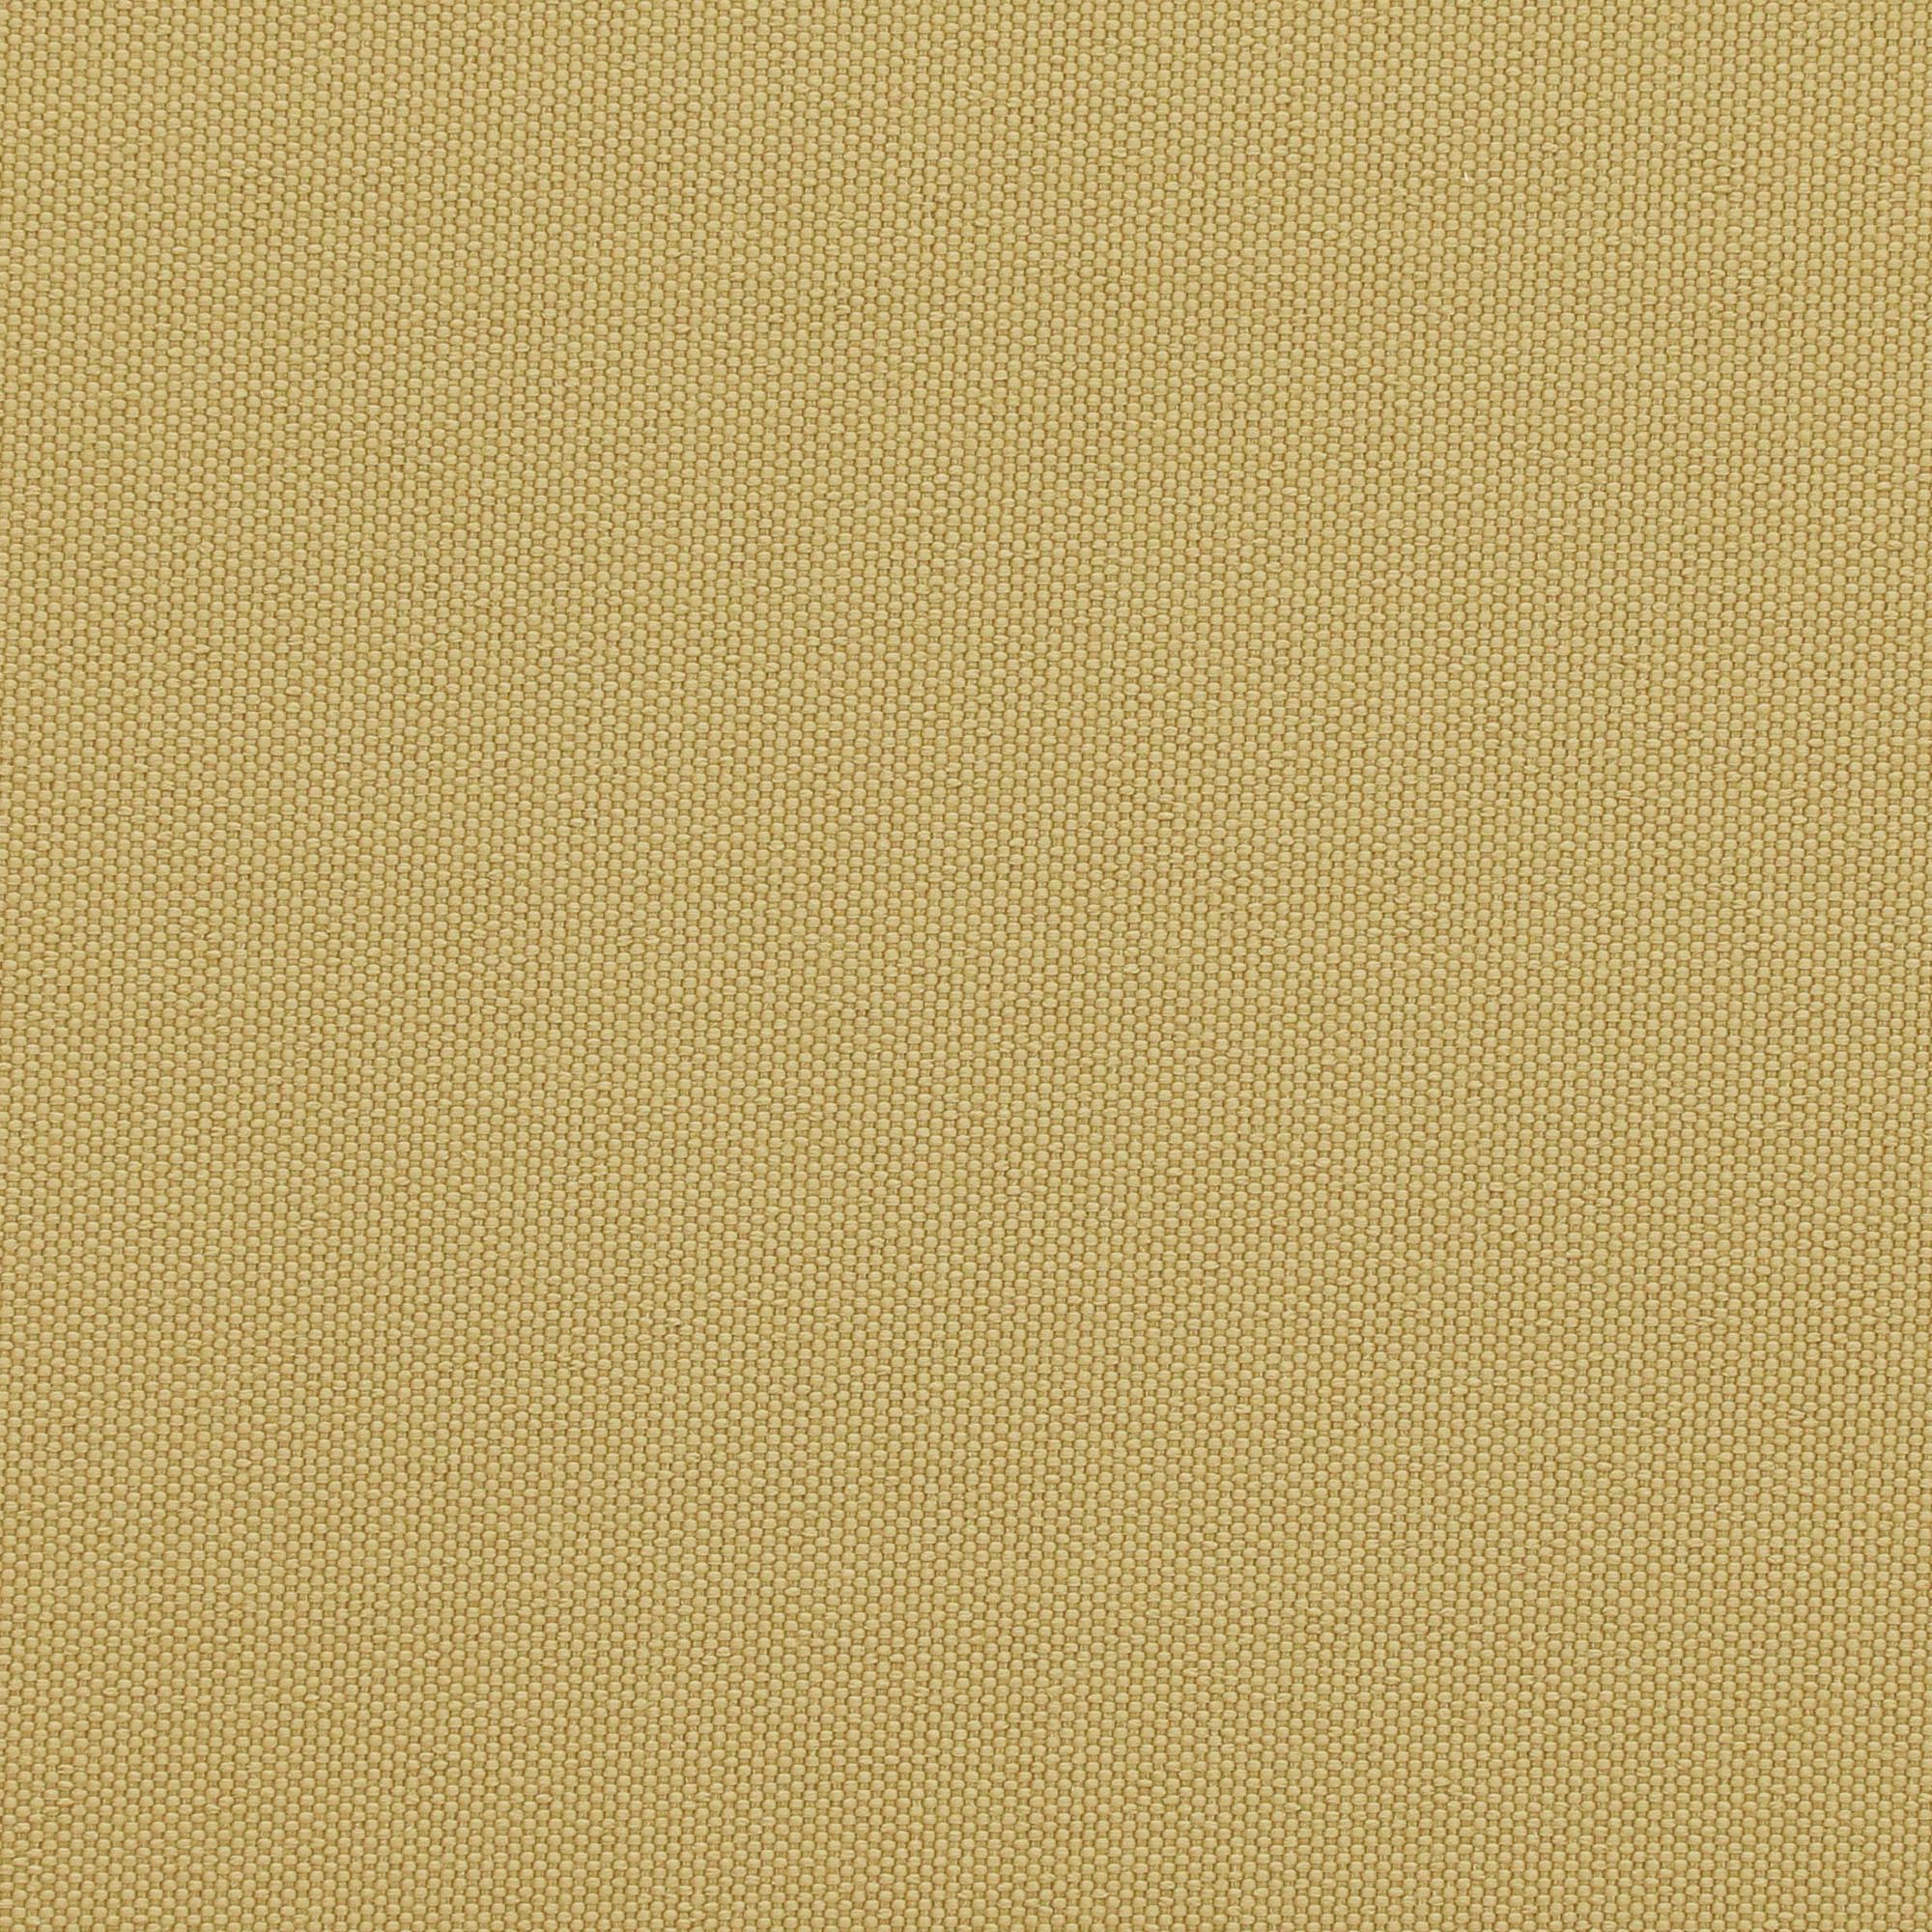 Комплект садовой мебели Jepara из 4 предметов (108), цвет светло-коричневый, размер 77х80х87 см - фото 16